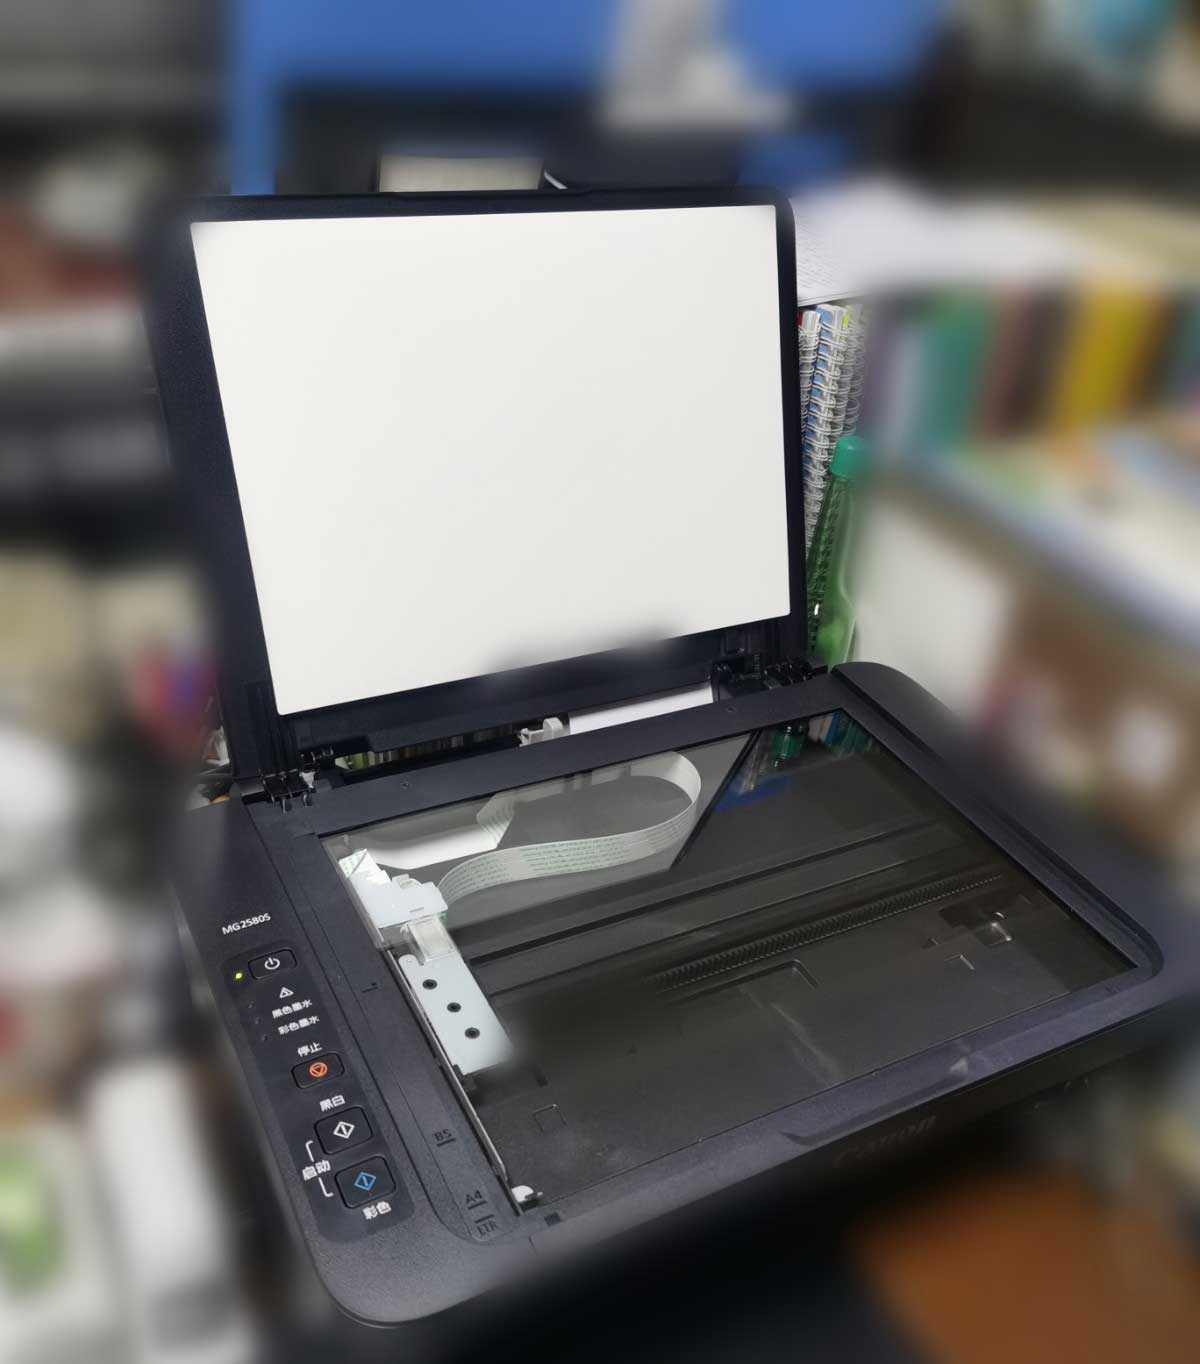 佳能ts3180打印机怎么连接手机打印文件?